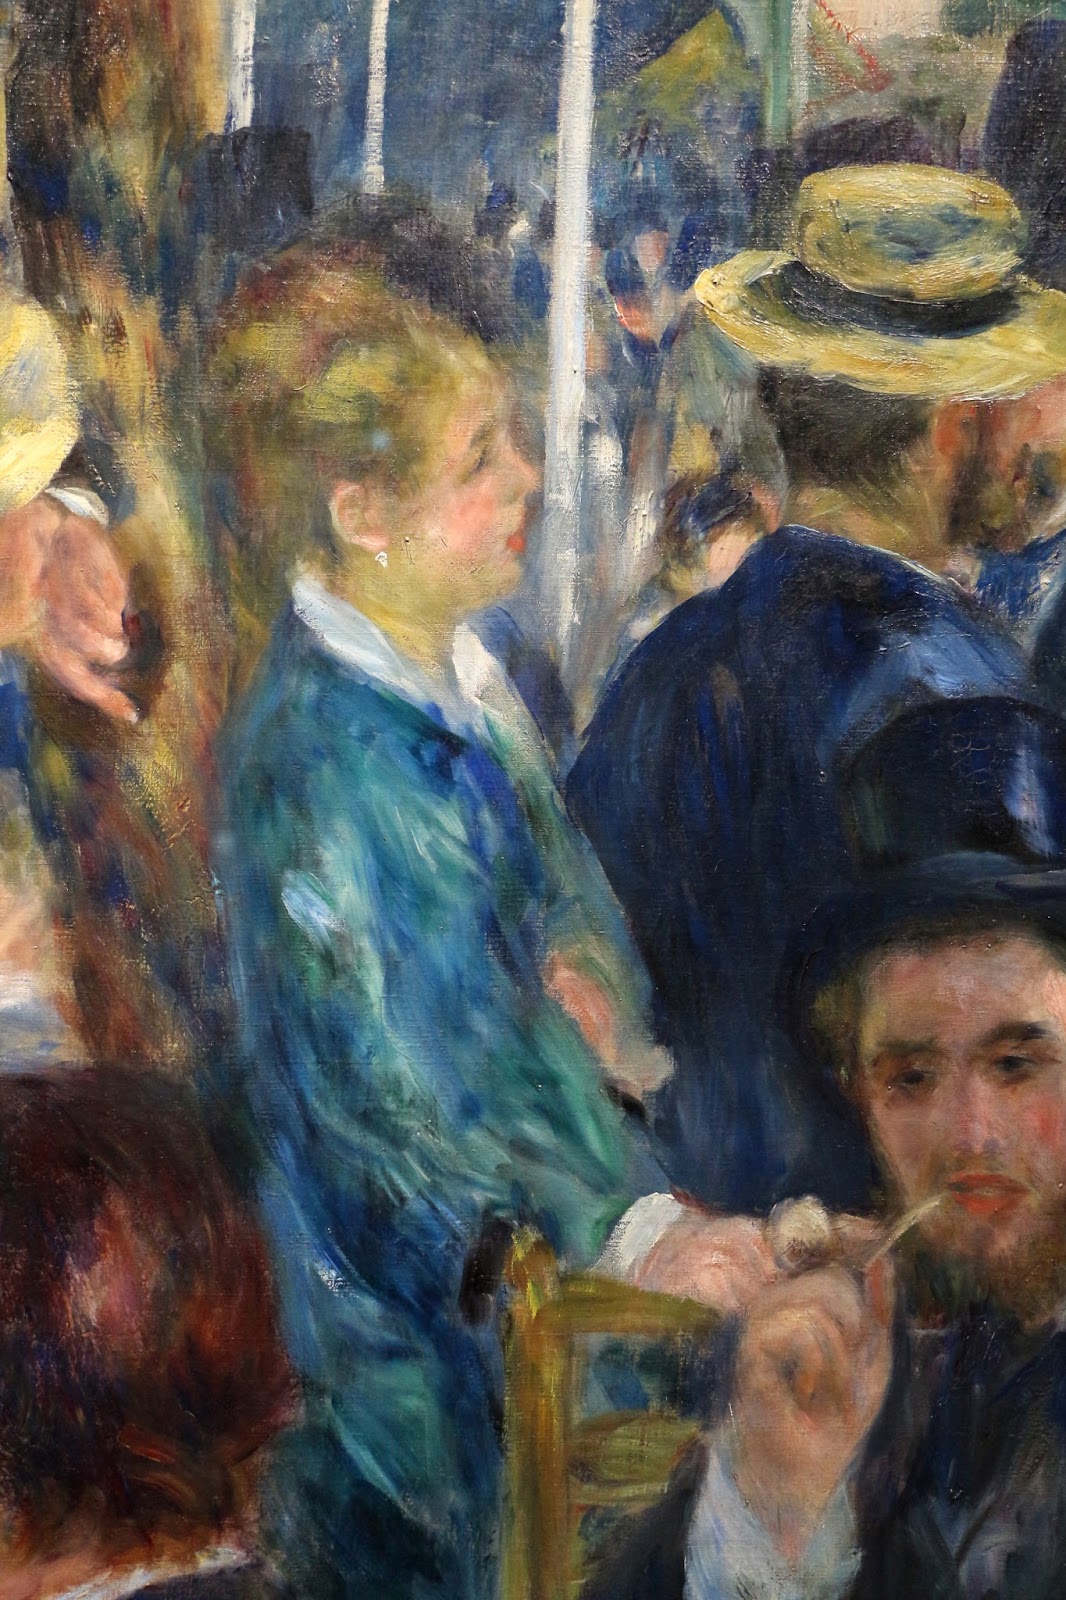 Pierre+Auguste+Renoir-1841-1-19 (449).jpg